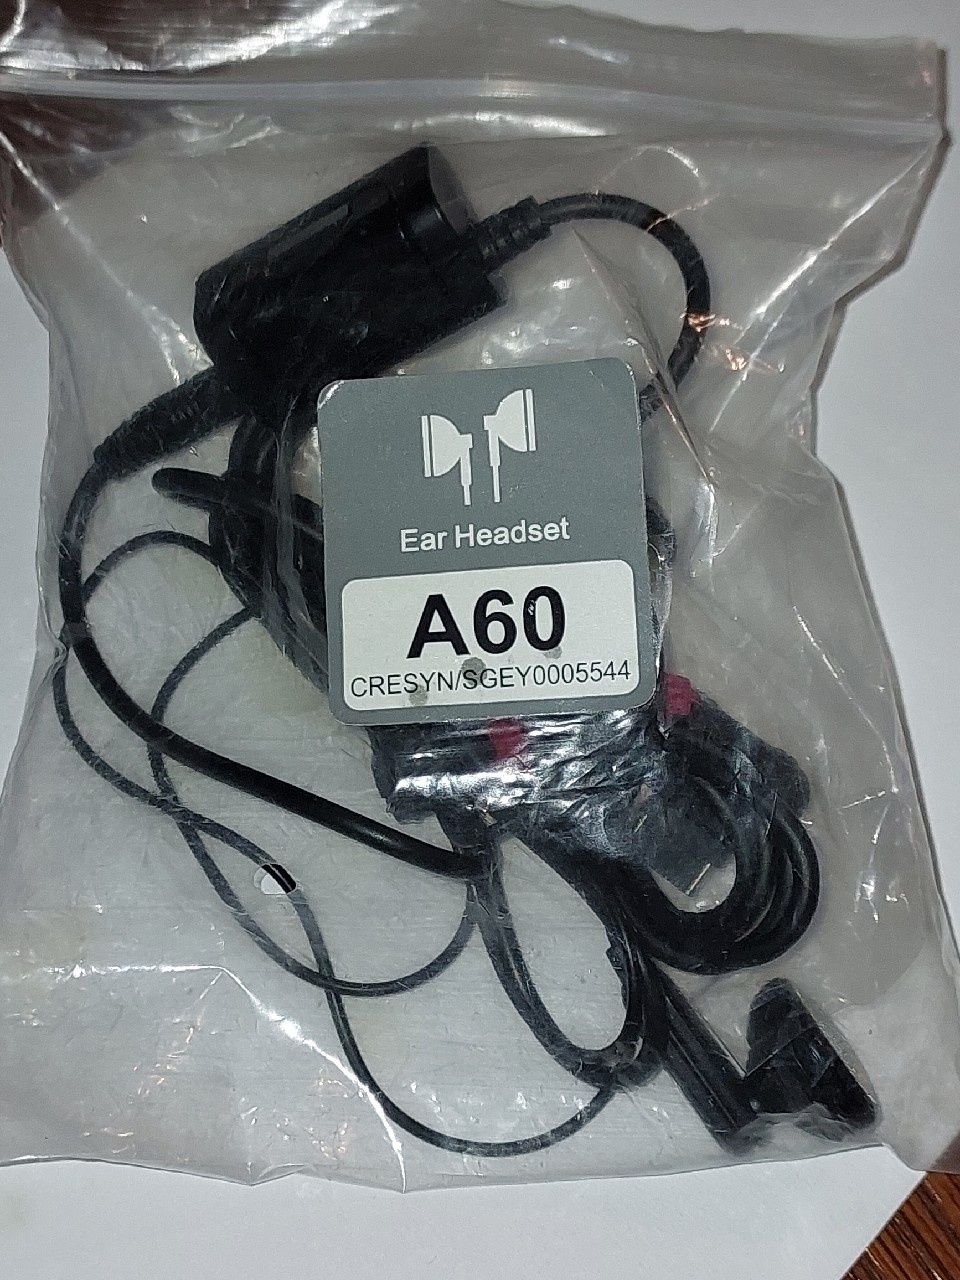 Kablowe Słuchawki do telefonu LG KU 580 telefon LG AG60 jack 3.5mm